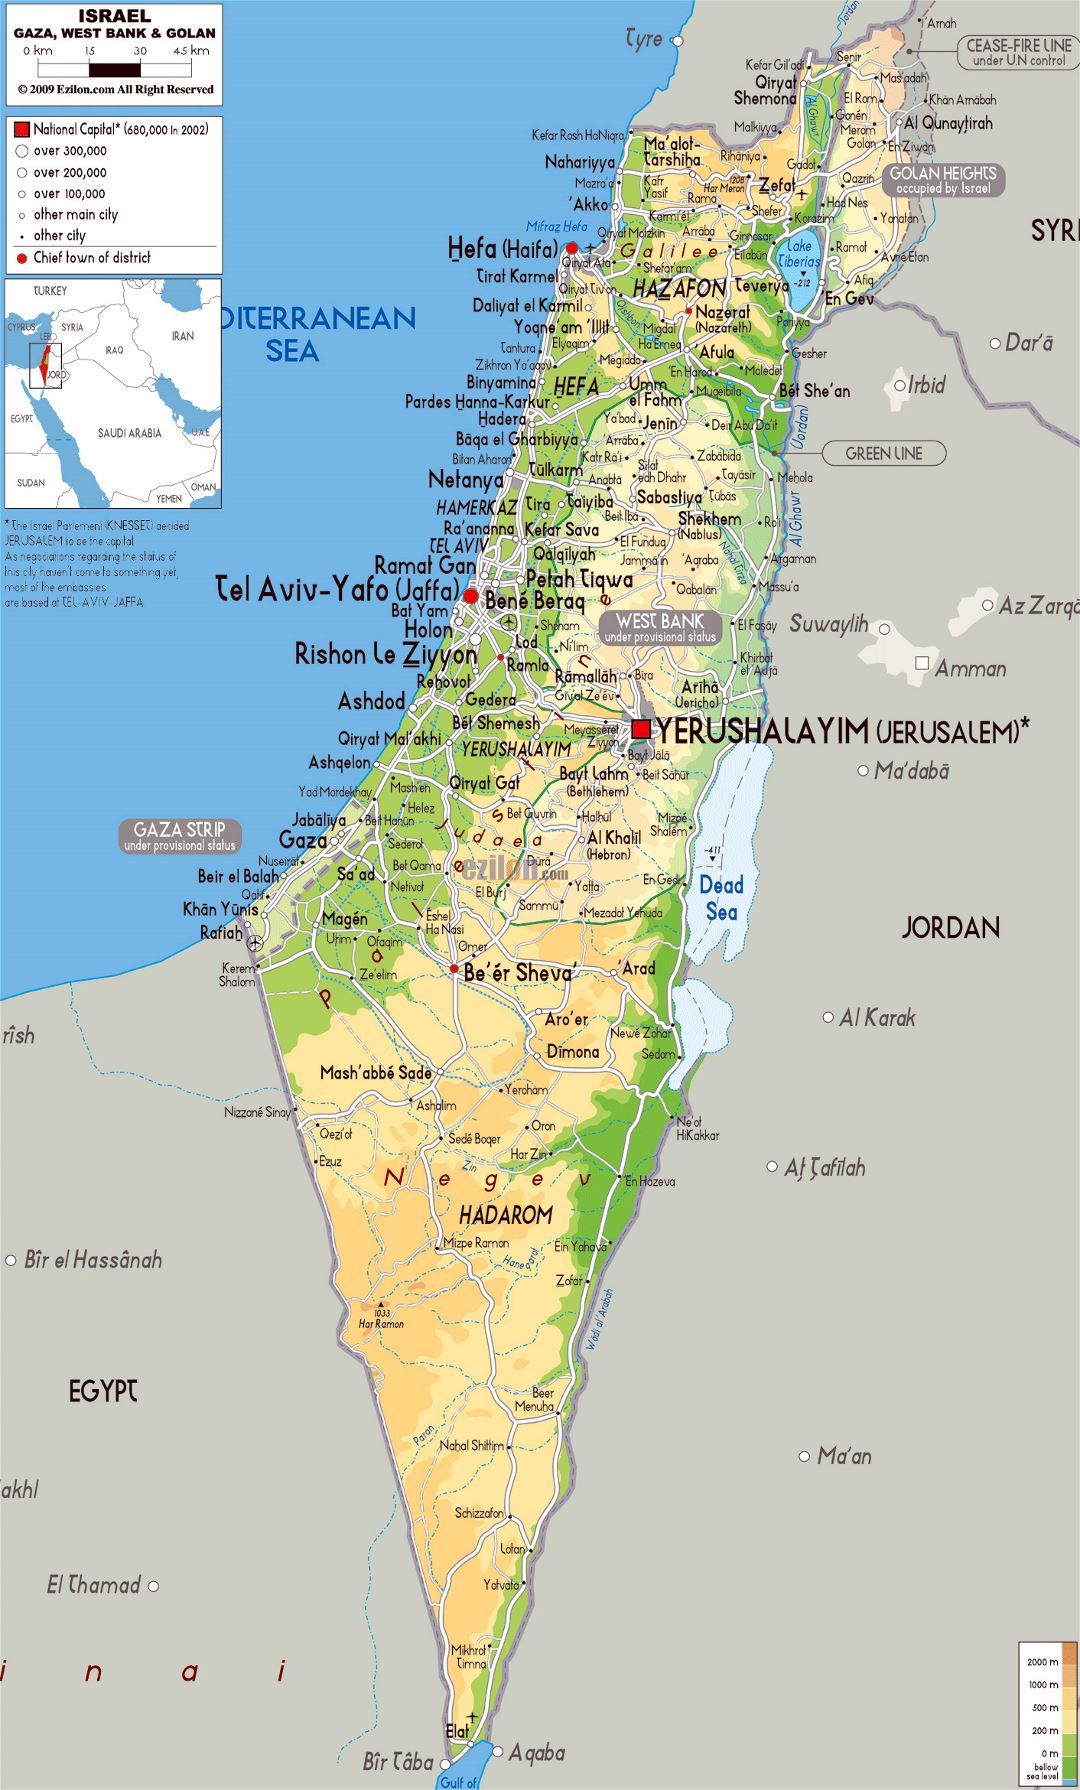 Grande mapa físico de Israel con carreteras, ciudades y aeropuertos